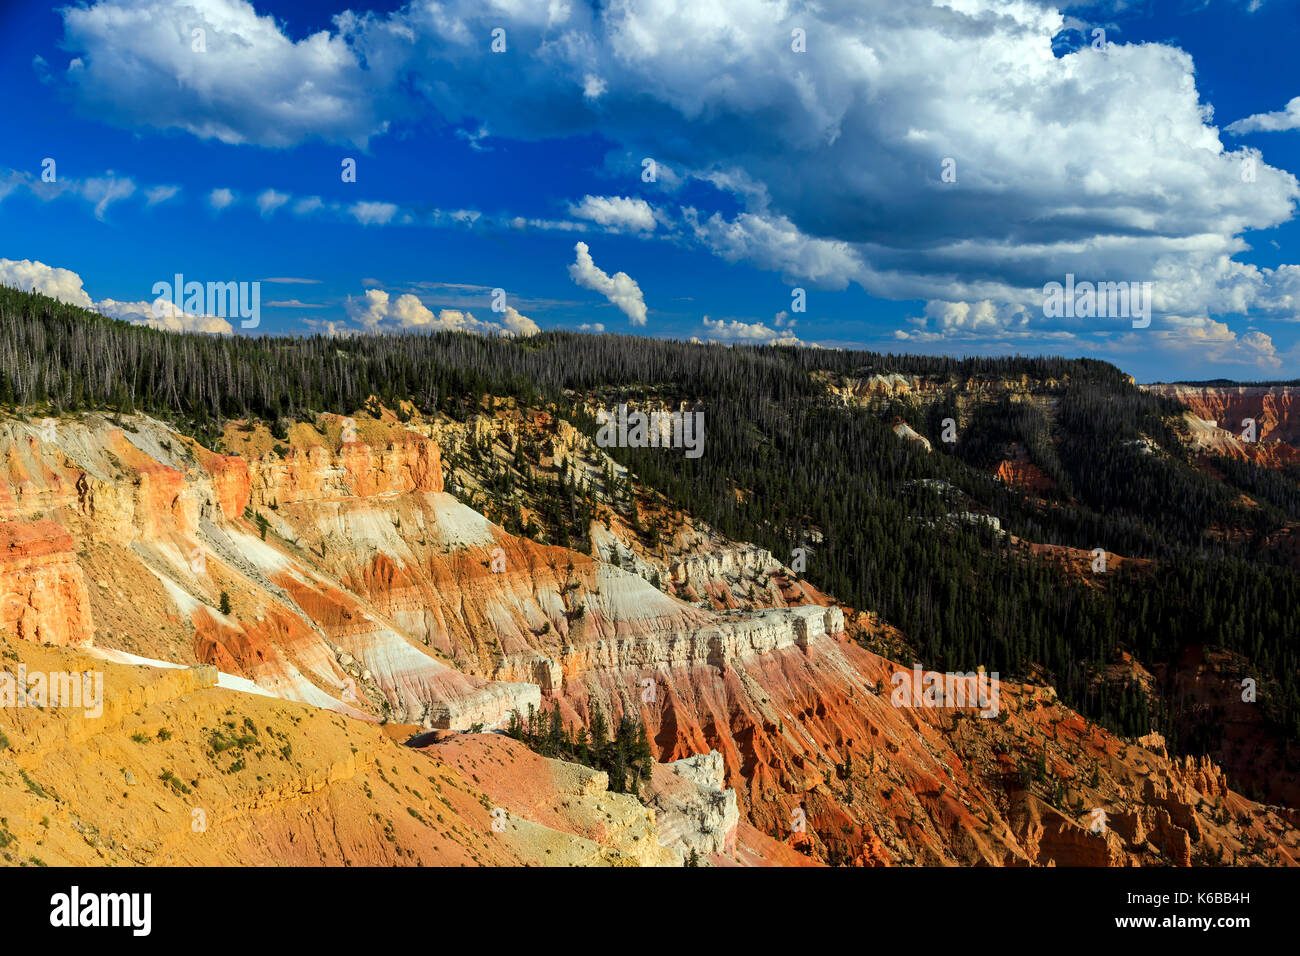 C'est une vue de la formations de roche rouge et boisées de l'amphithéâtre de Cedar Breaks National Monument, Utah, USA. Banque D'Images